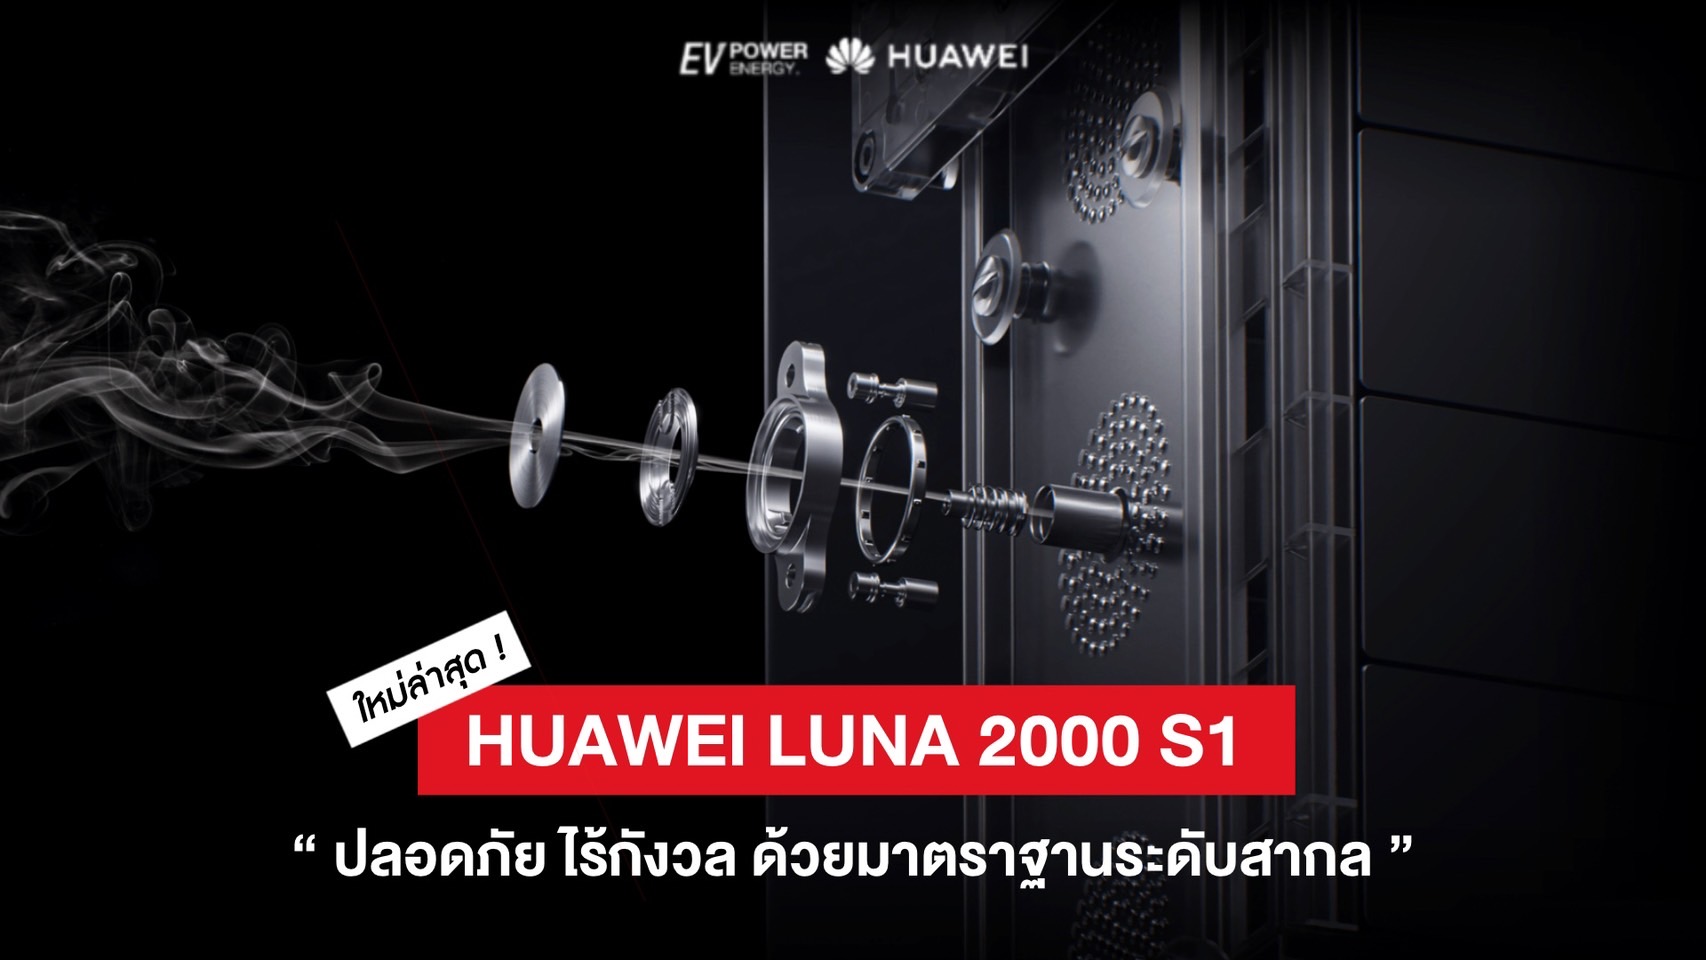 Huawei Luna 2000 S1 มาตรฐานสากล ปลอดภัย ไร้กังวล